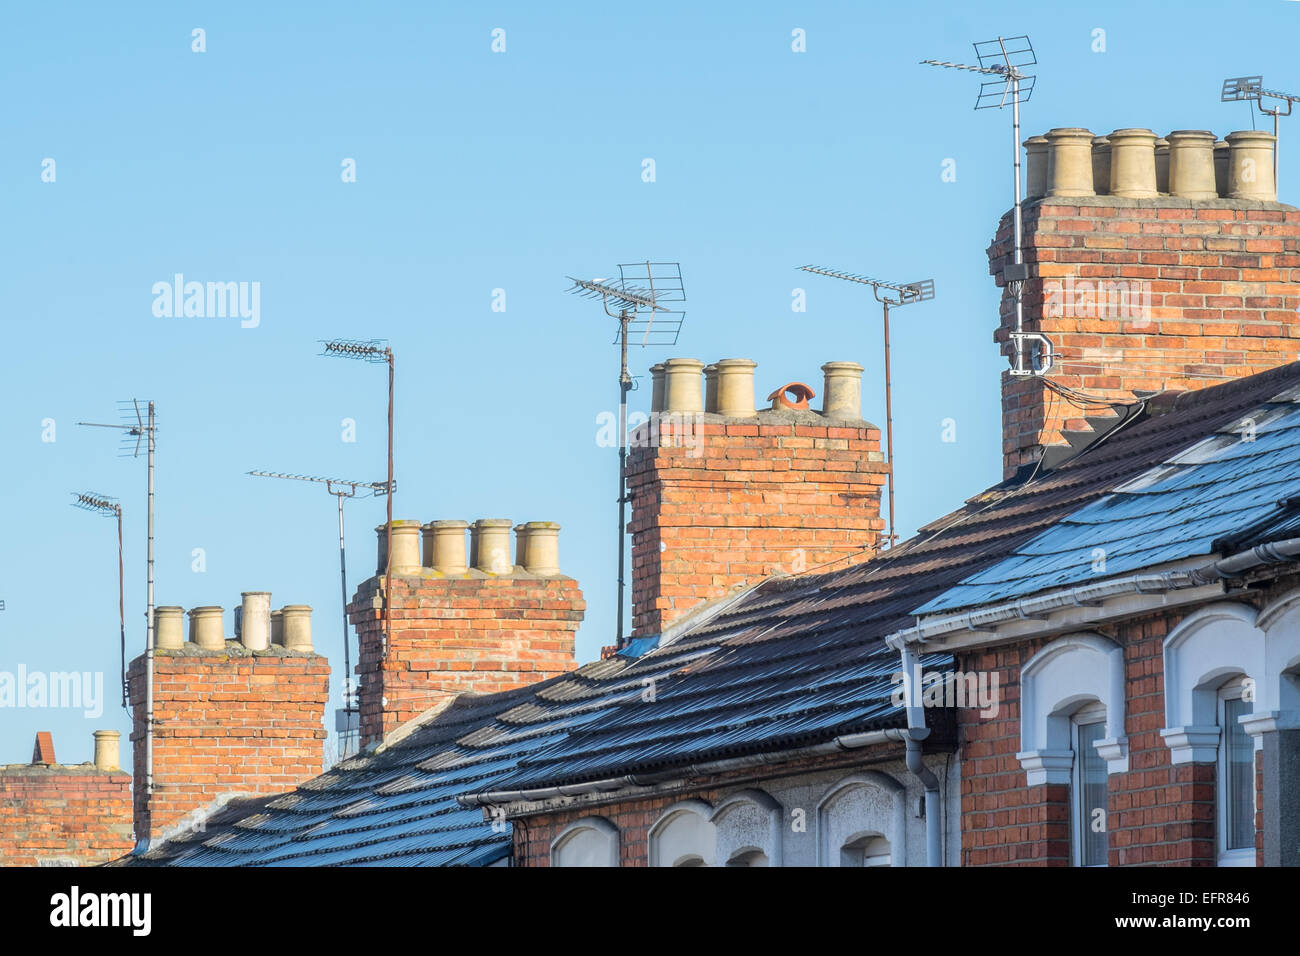 Les toits, les cheminées et les antennes de télévision de maisons mitoyennes de style victorien typique, dans une rue de banlieue, France sur une journée claire Banque D'Images